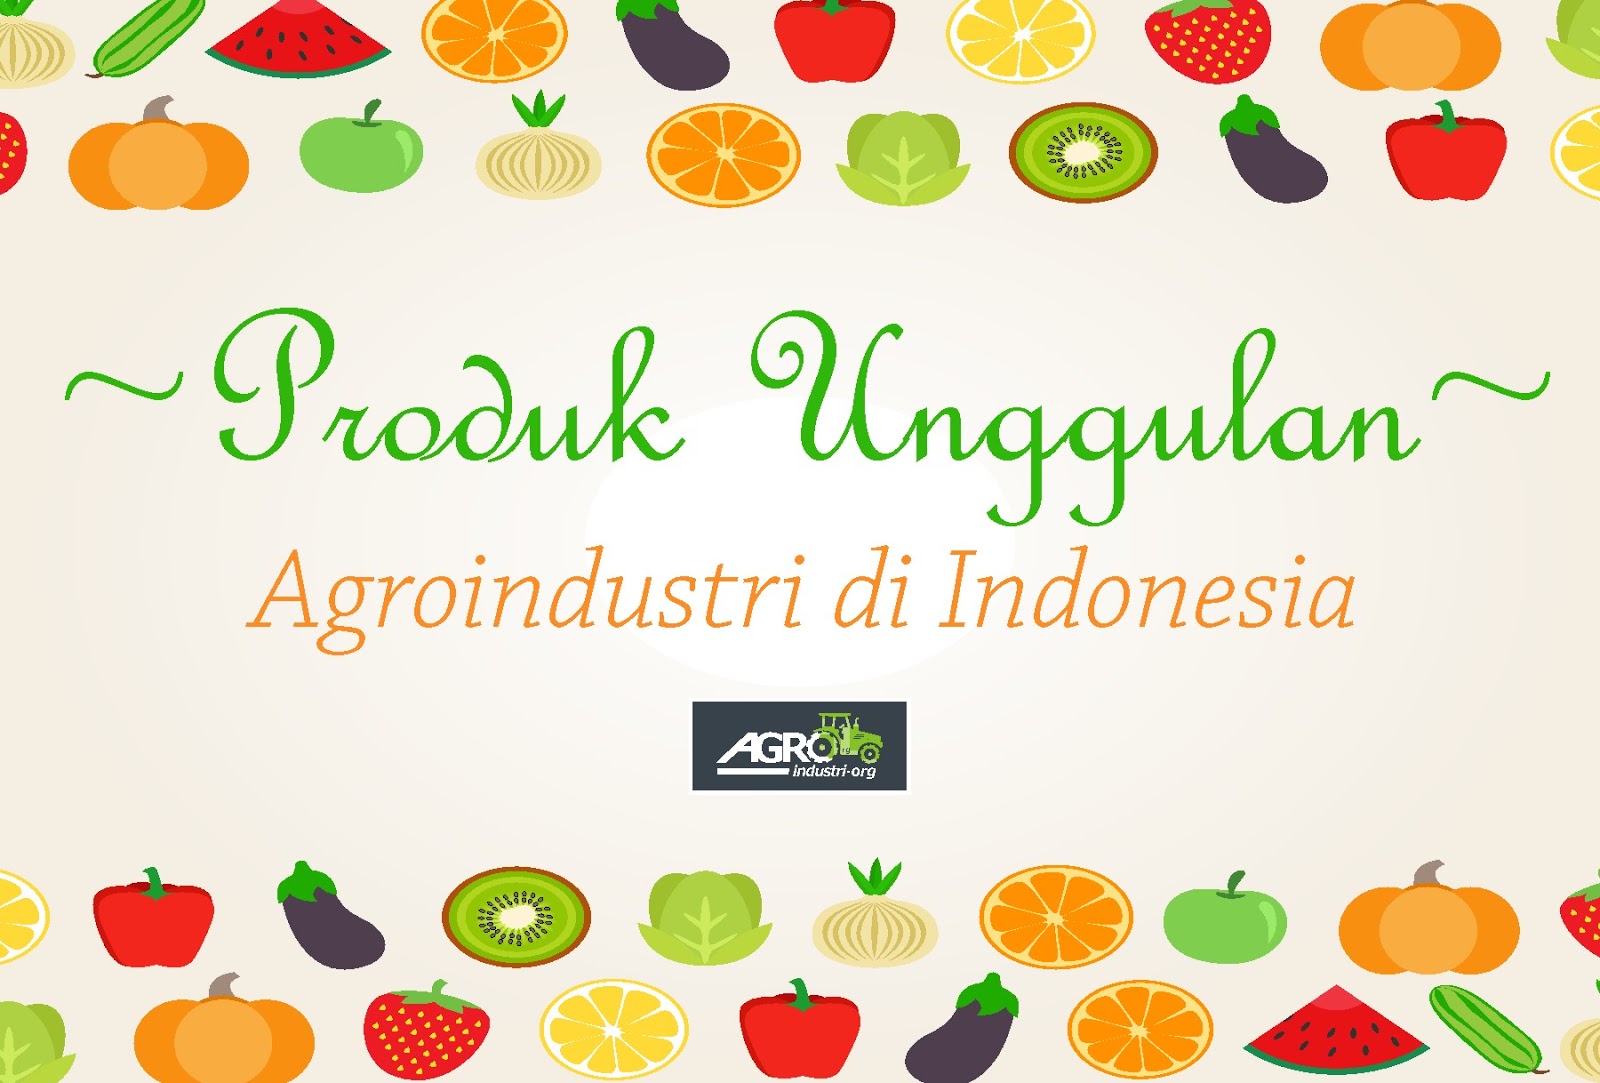 Produk Unggulan Hasil Pengolahan Agroindustri di Indonesia